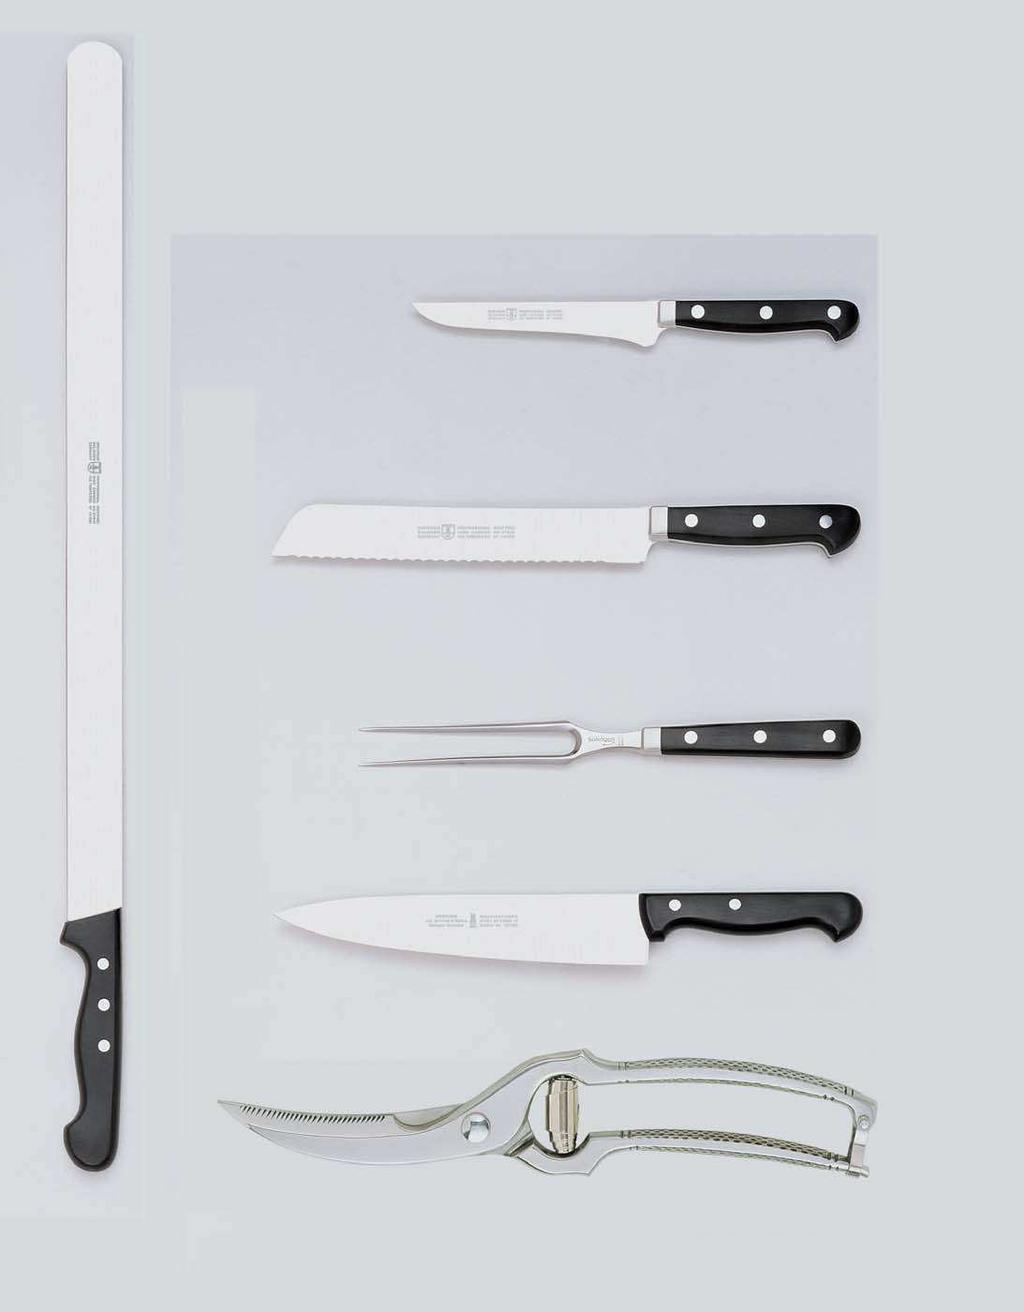 Profi-Messer spülmaschinenfest Couteaux Professionnels résistantes au lave-vaisselles Professional knives dishwasher safe Cuchillos Profesionales resistente